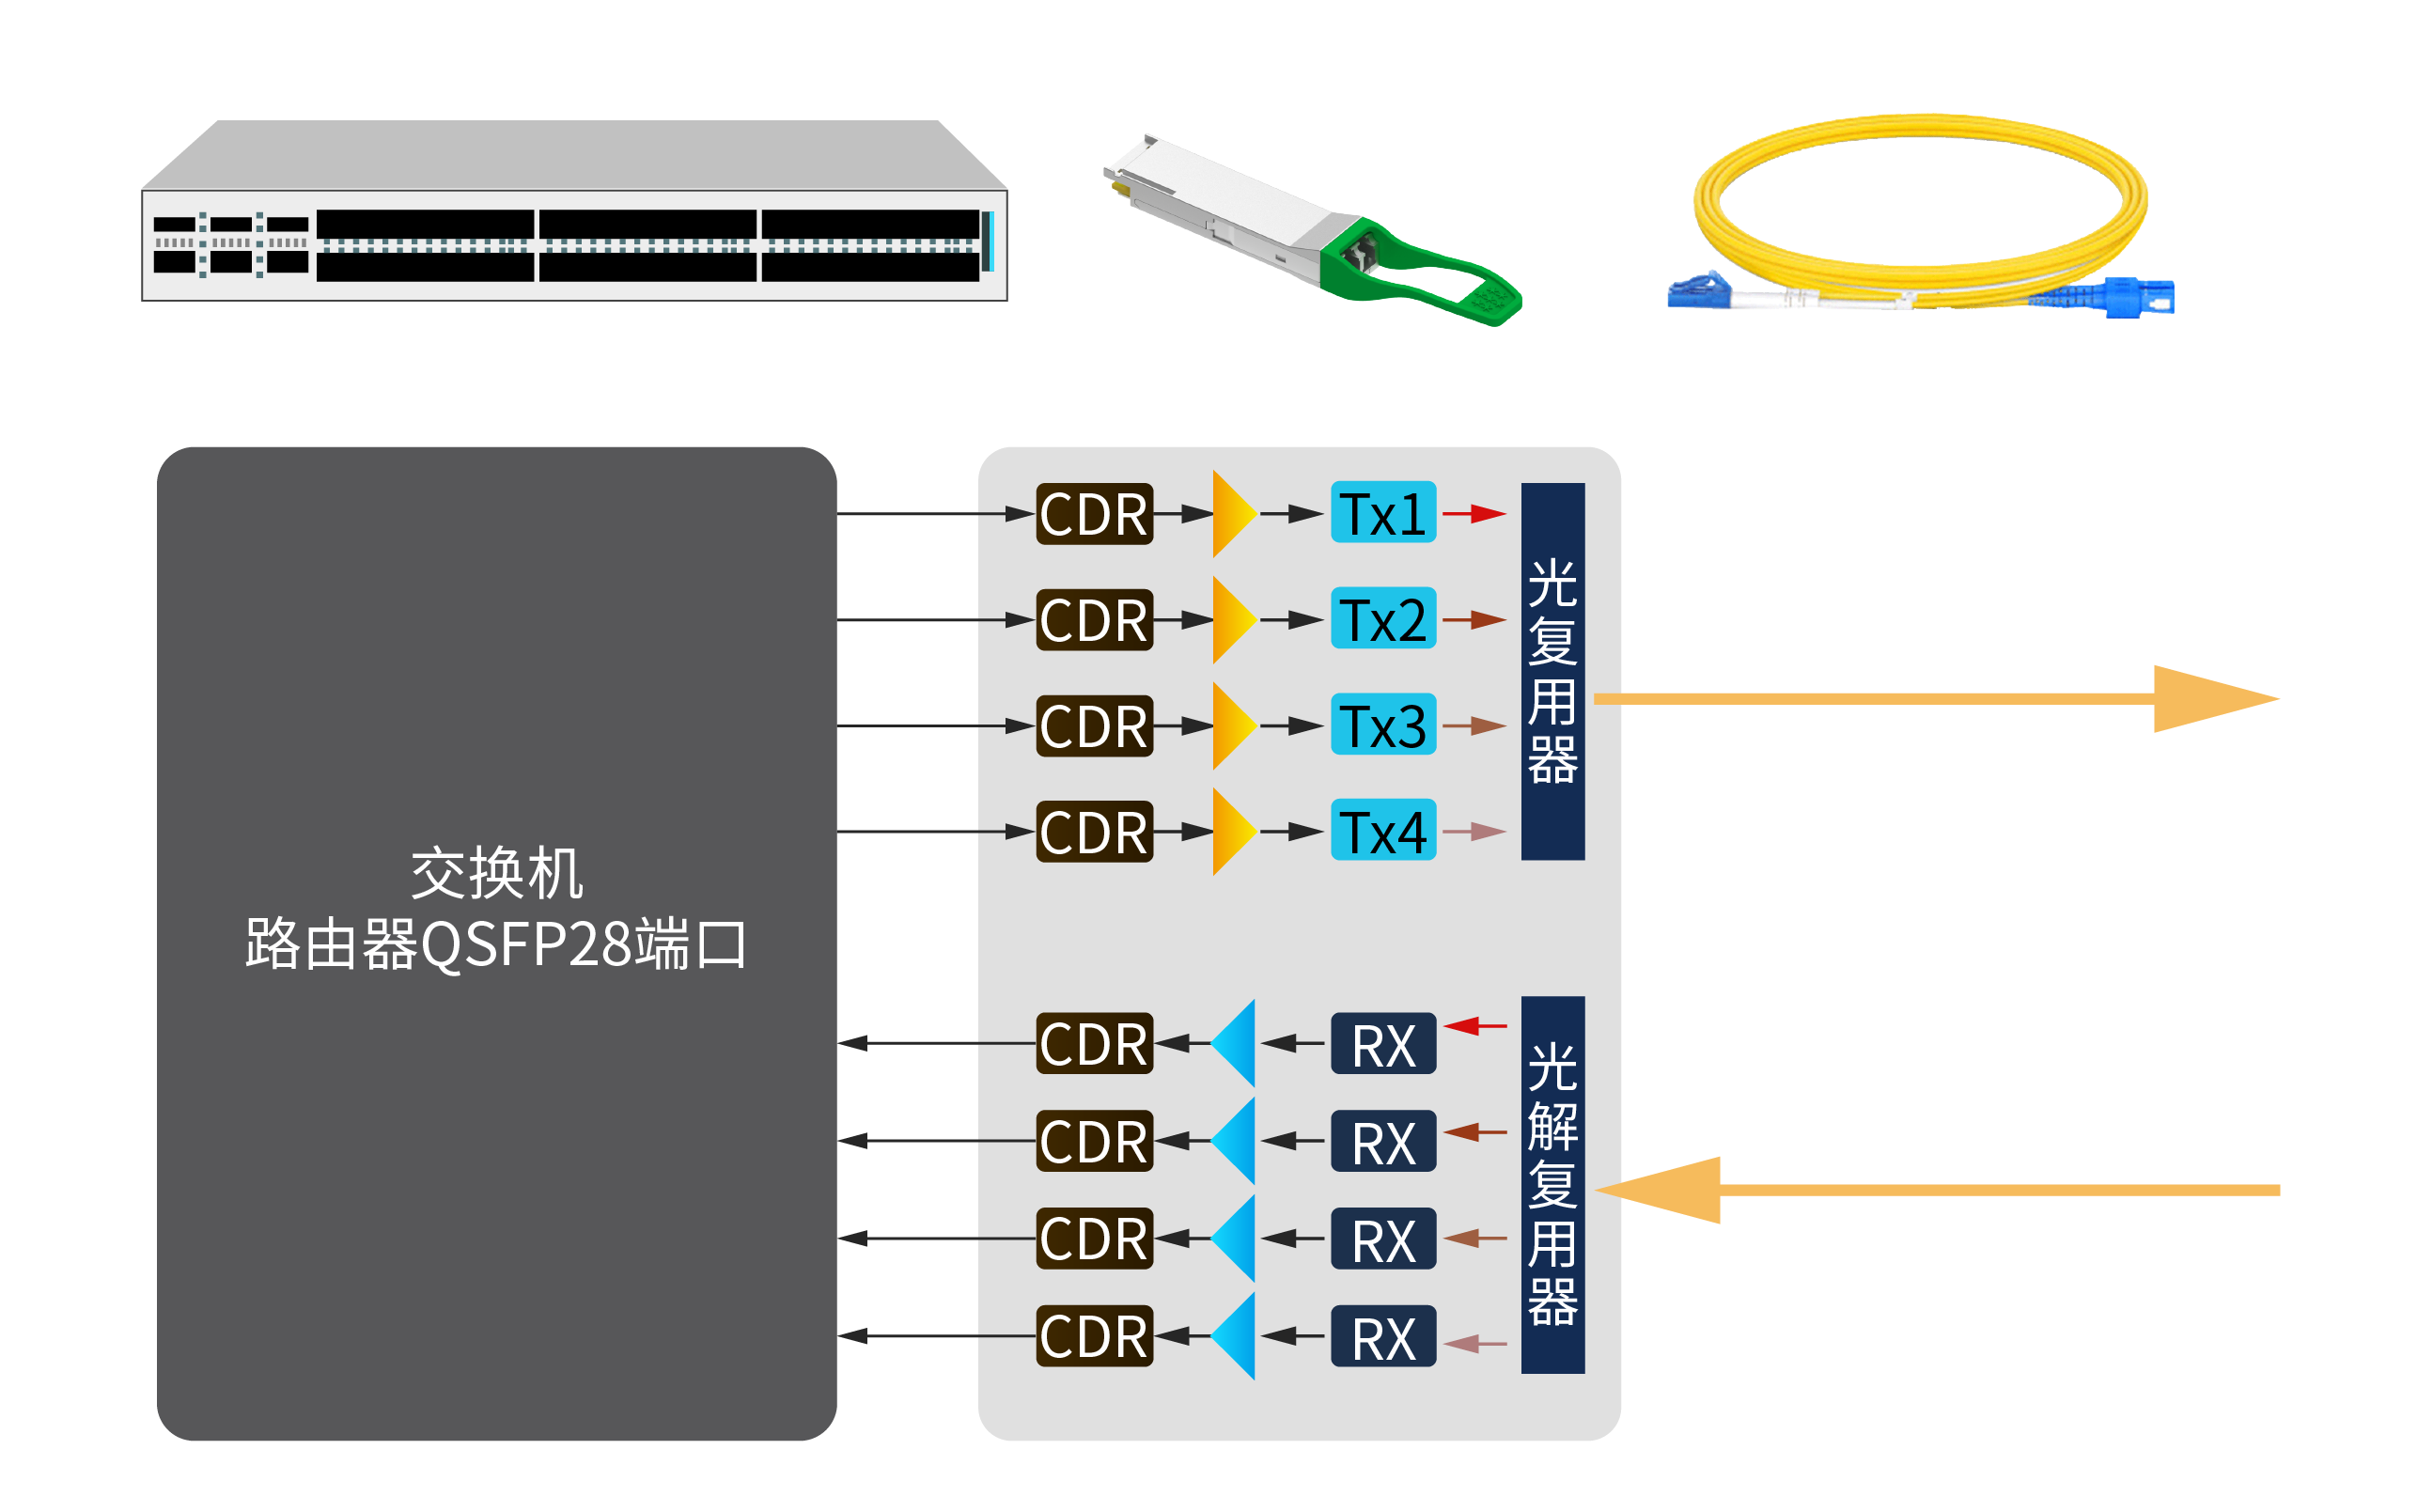 QSFP28模块本质上是四通道器件